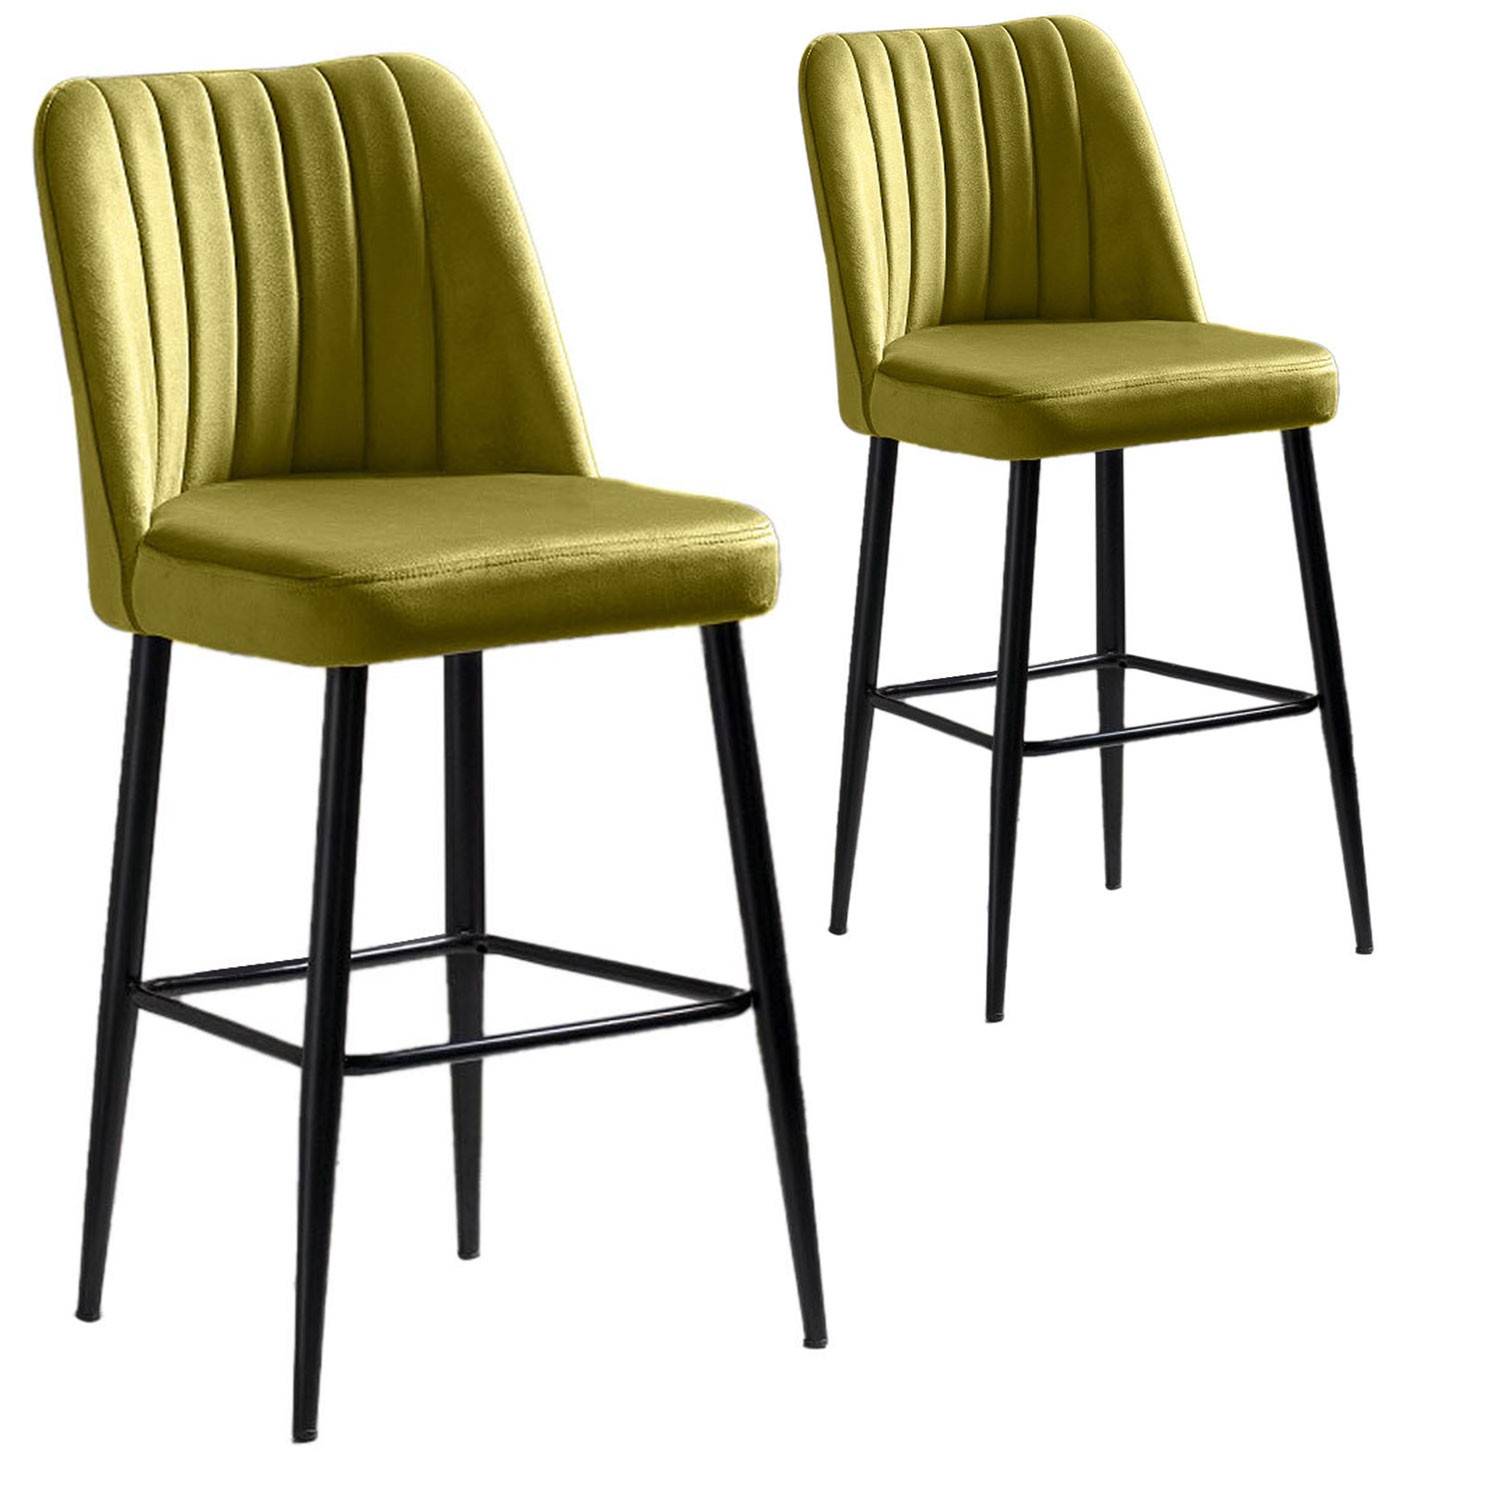 Lote de 2 sillas de bar Sero de terciopelo verde amarillento y metal negro